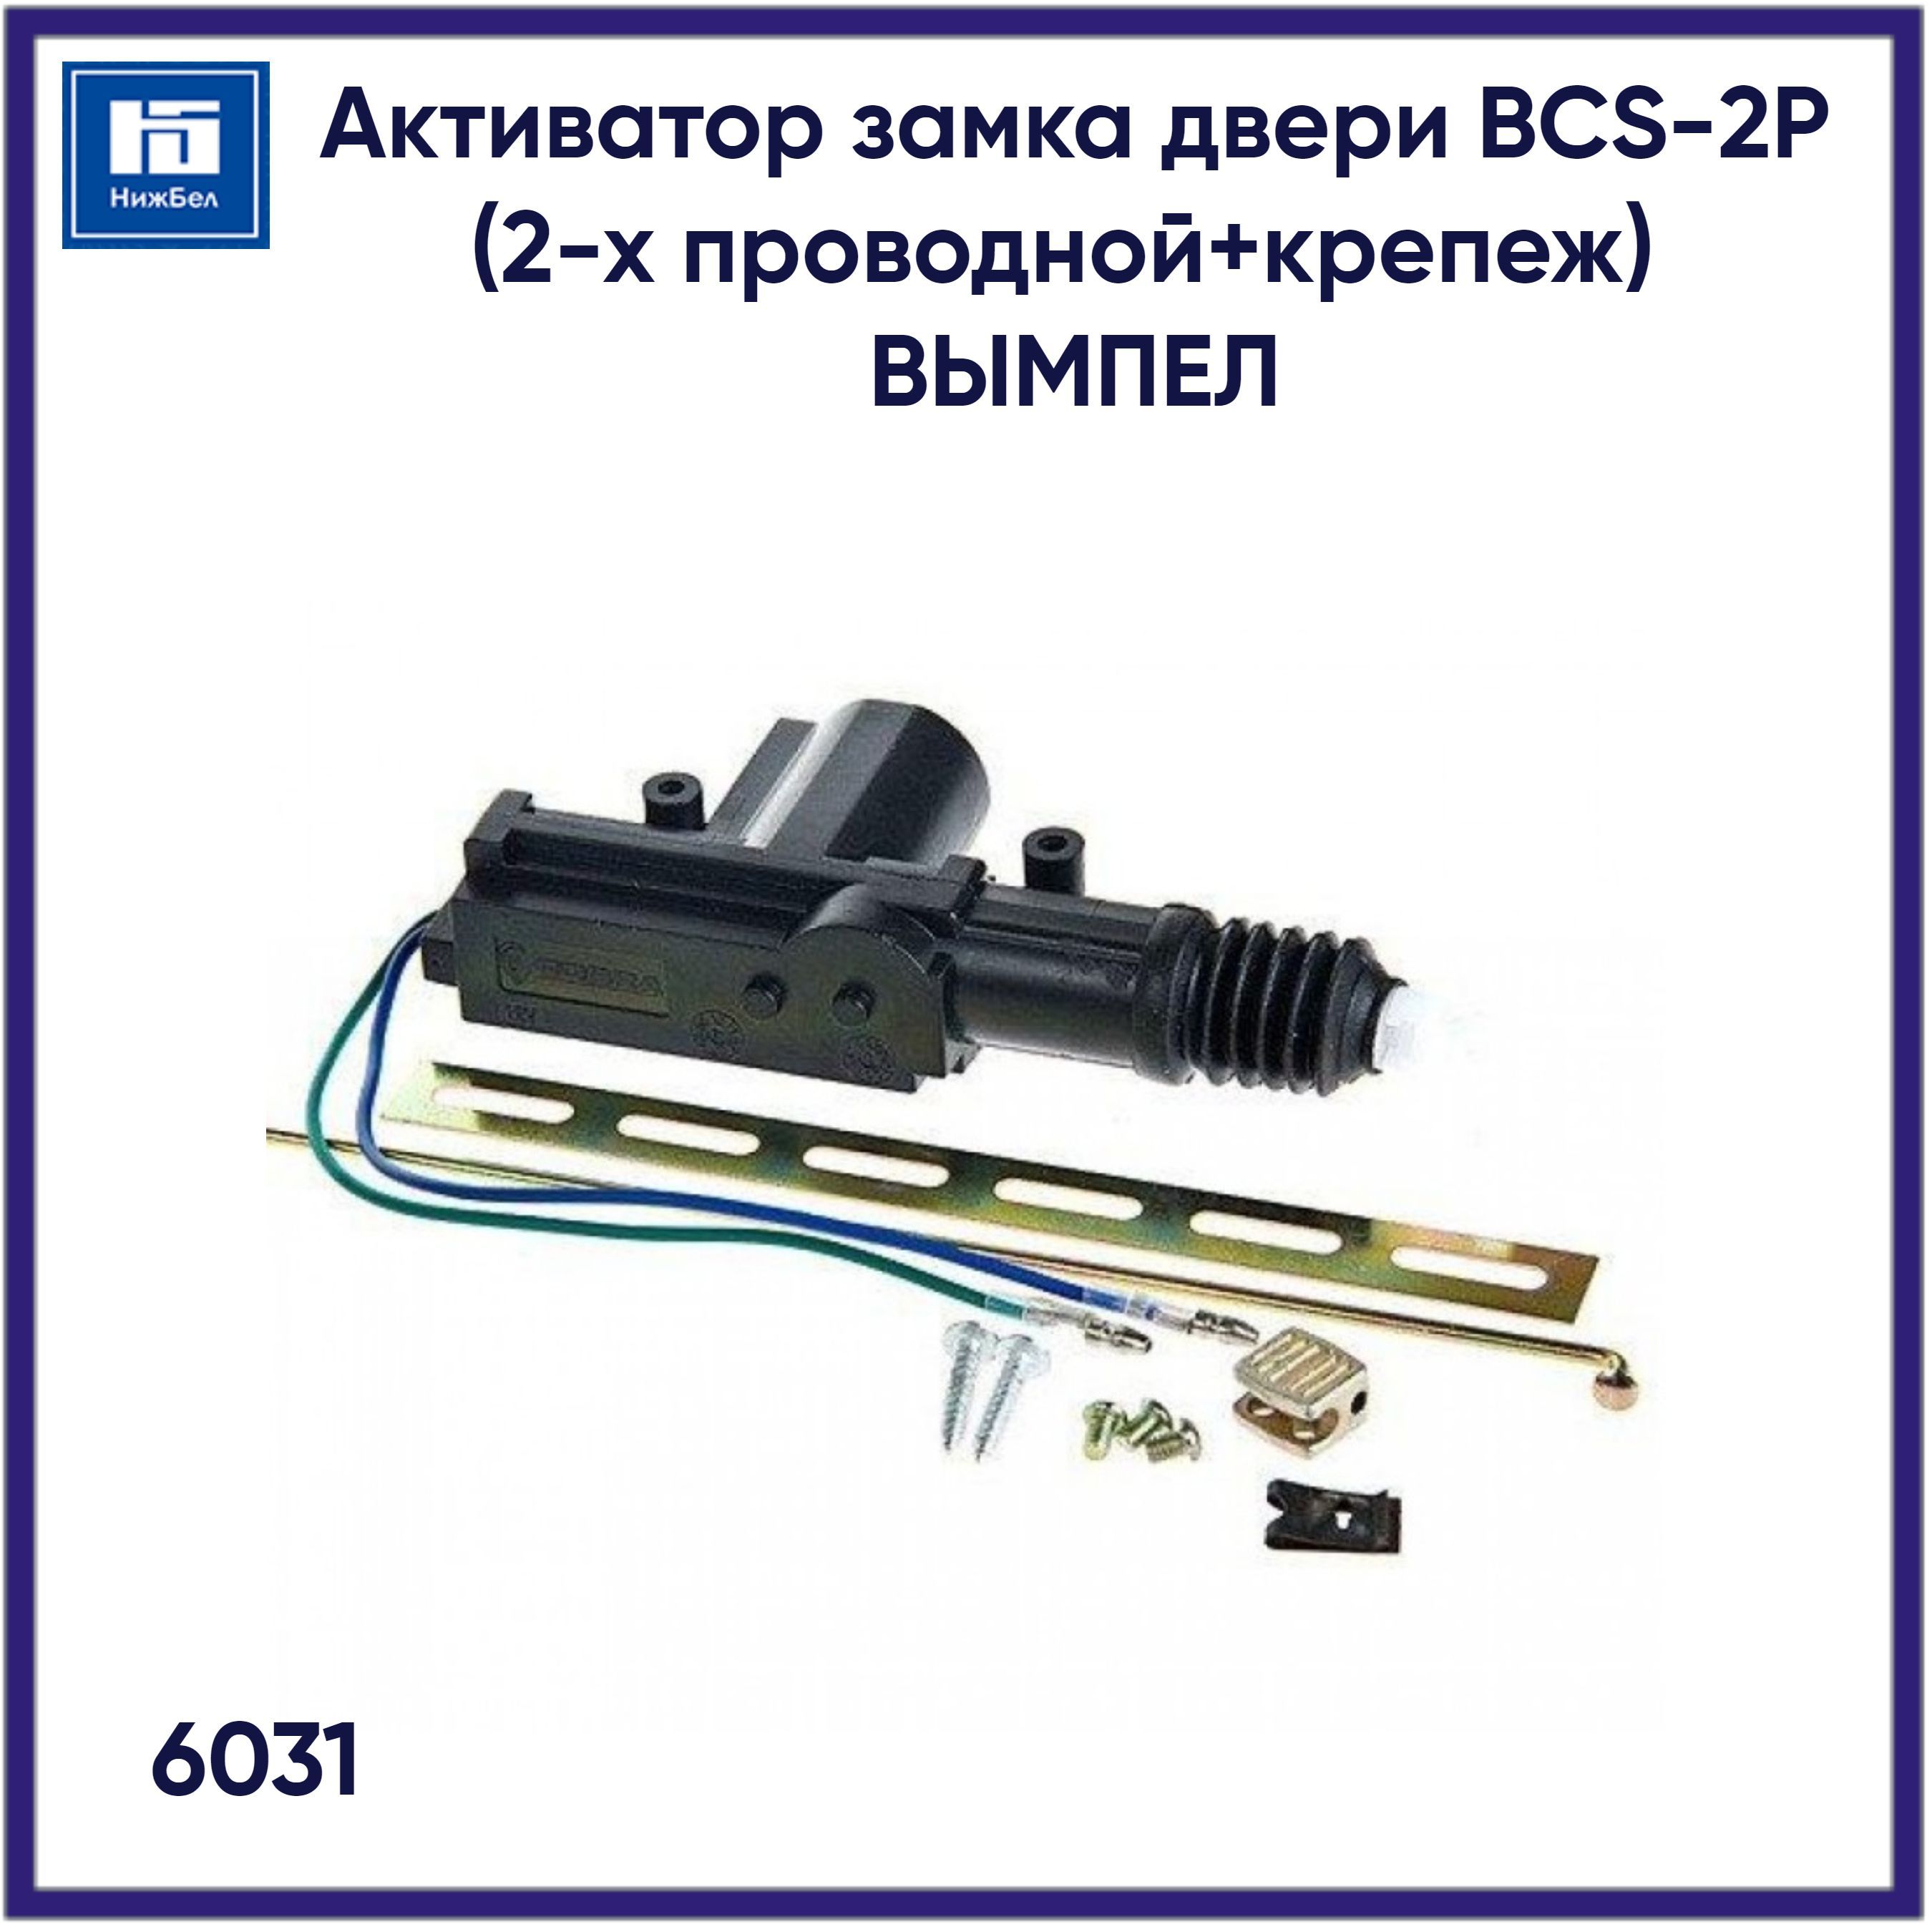 АктиваторзамкадвериBCS-2P(2-хпроводной+крепеж)ВЫМПЕЛ6031